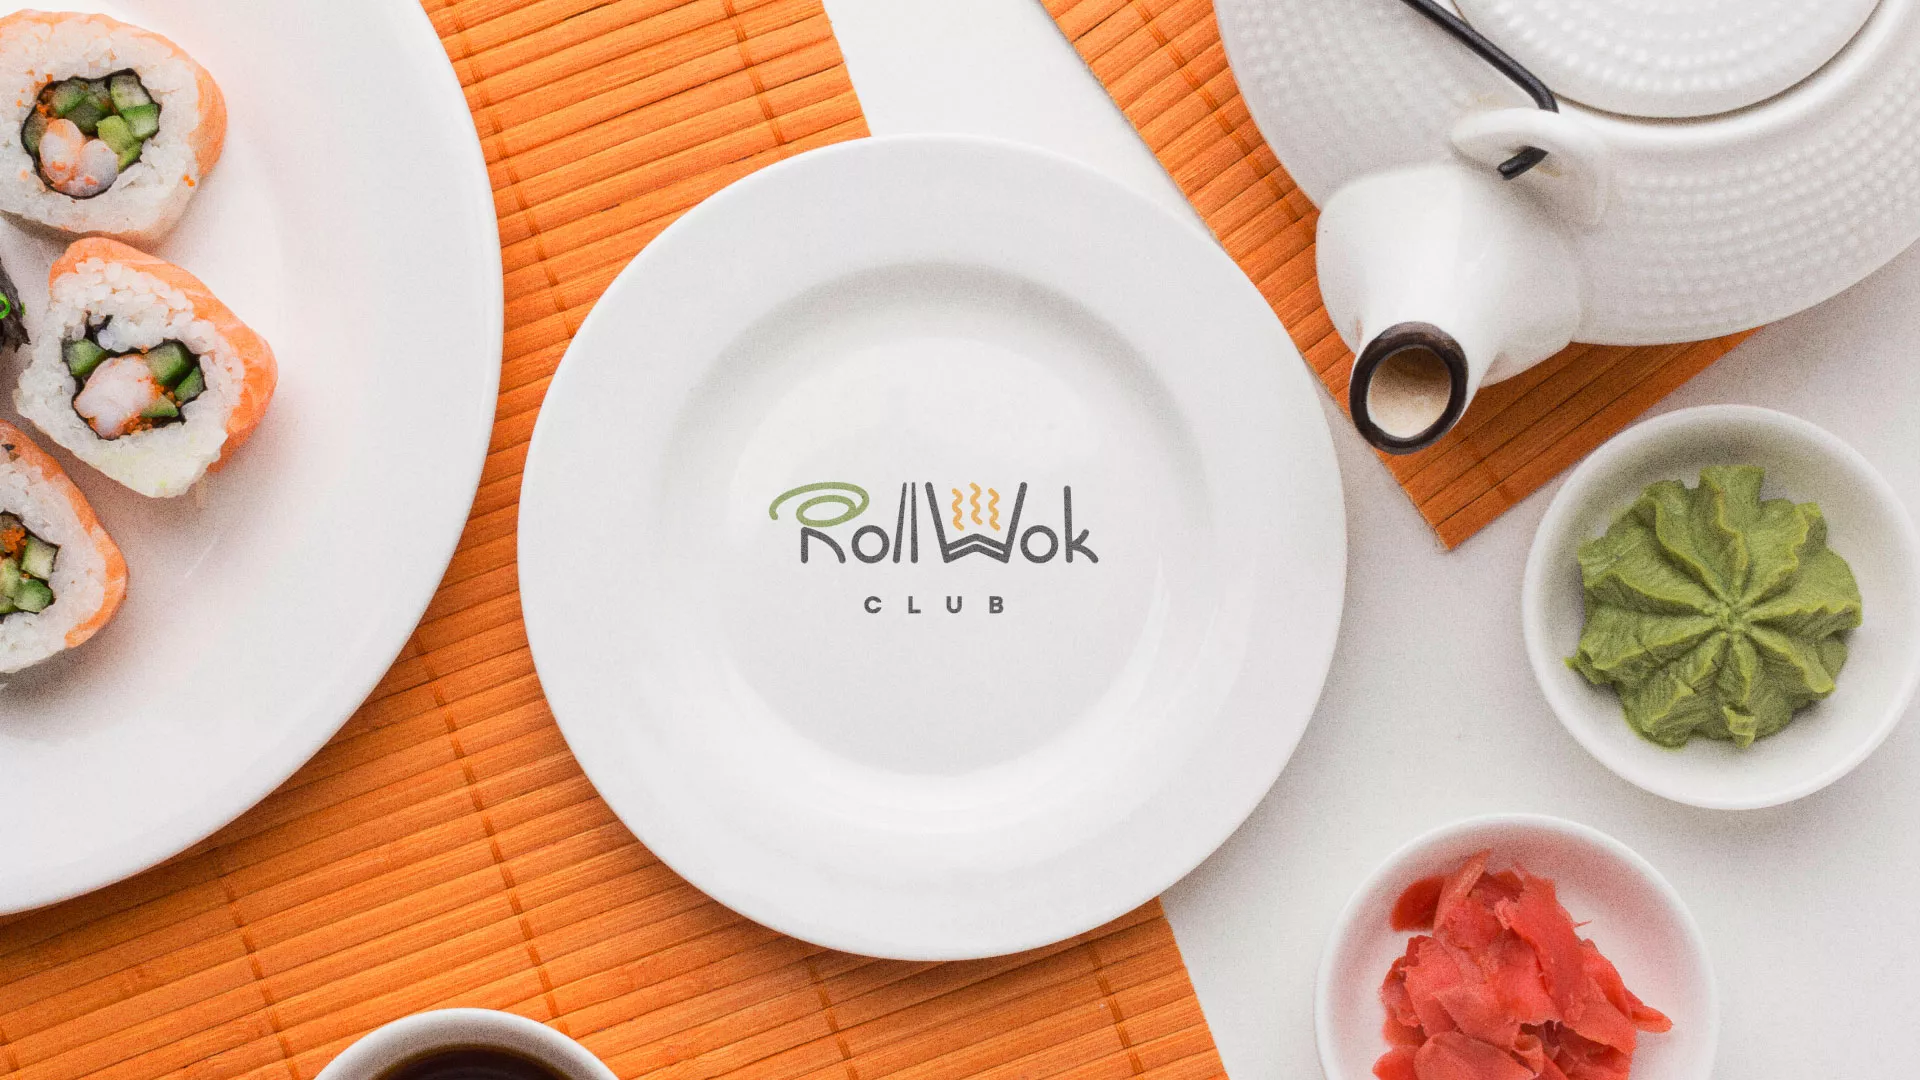 Разработка логотипа и фирменного стиля суши-бара «Roll Wok Club» в Холме